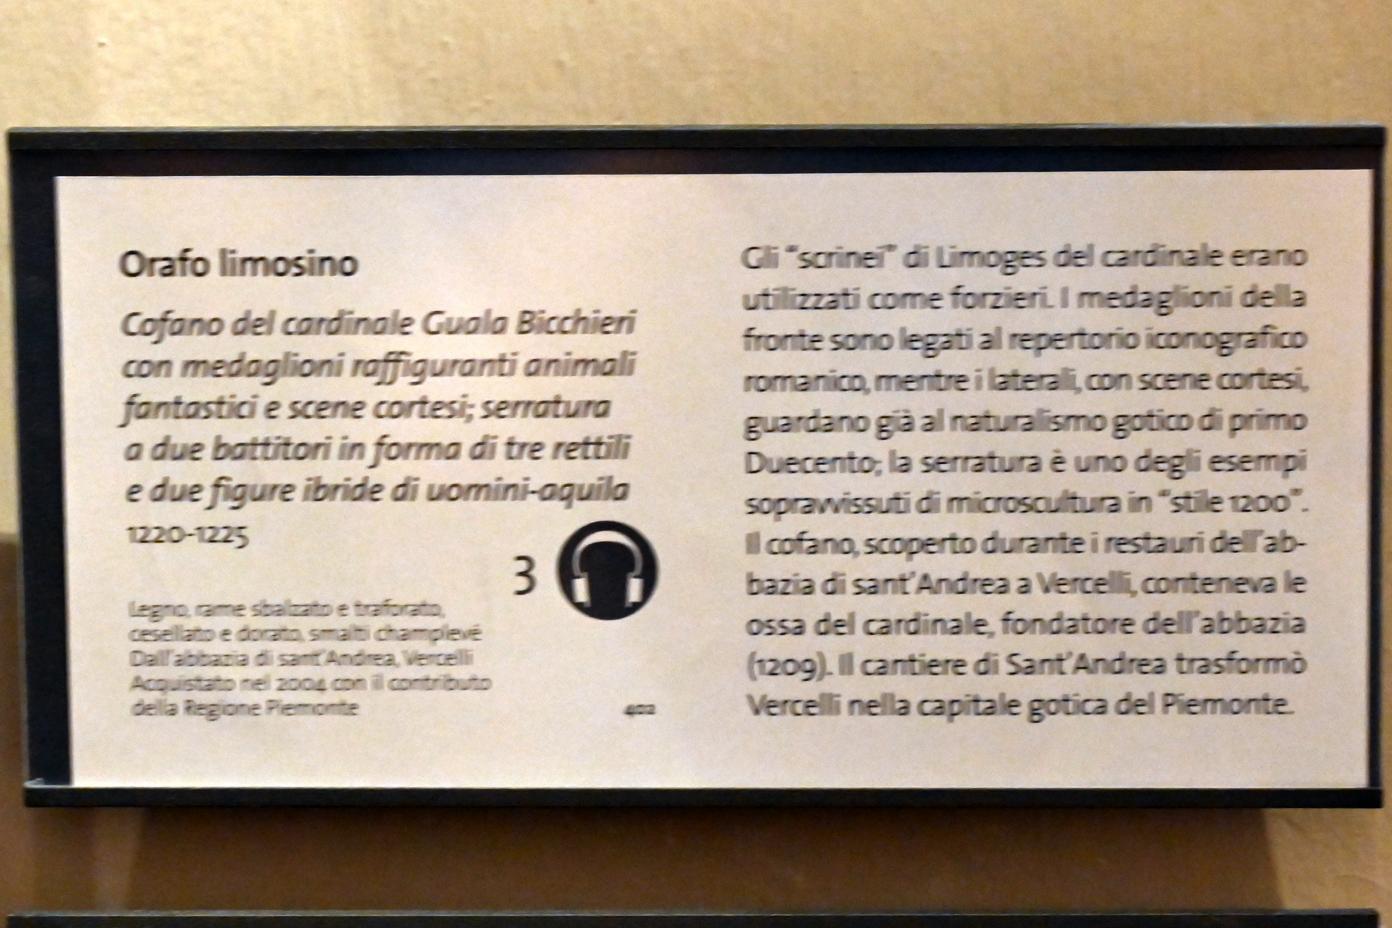 Truhe des Kardinals Guala Bicchieri mit Medaillons, Vercelli, Abbazia di Sant'Andrea, jetzt Turin, Museo civico d'arte antica, Saal 8, 1220–1225, Bild 3/3